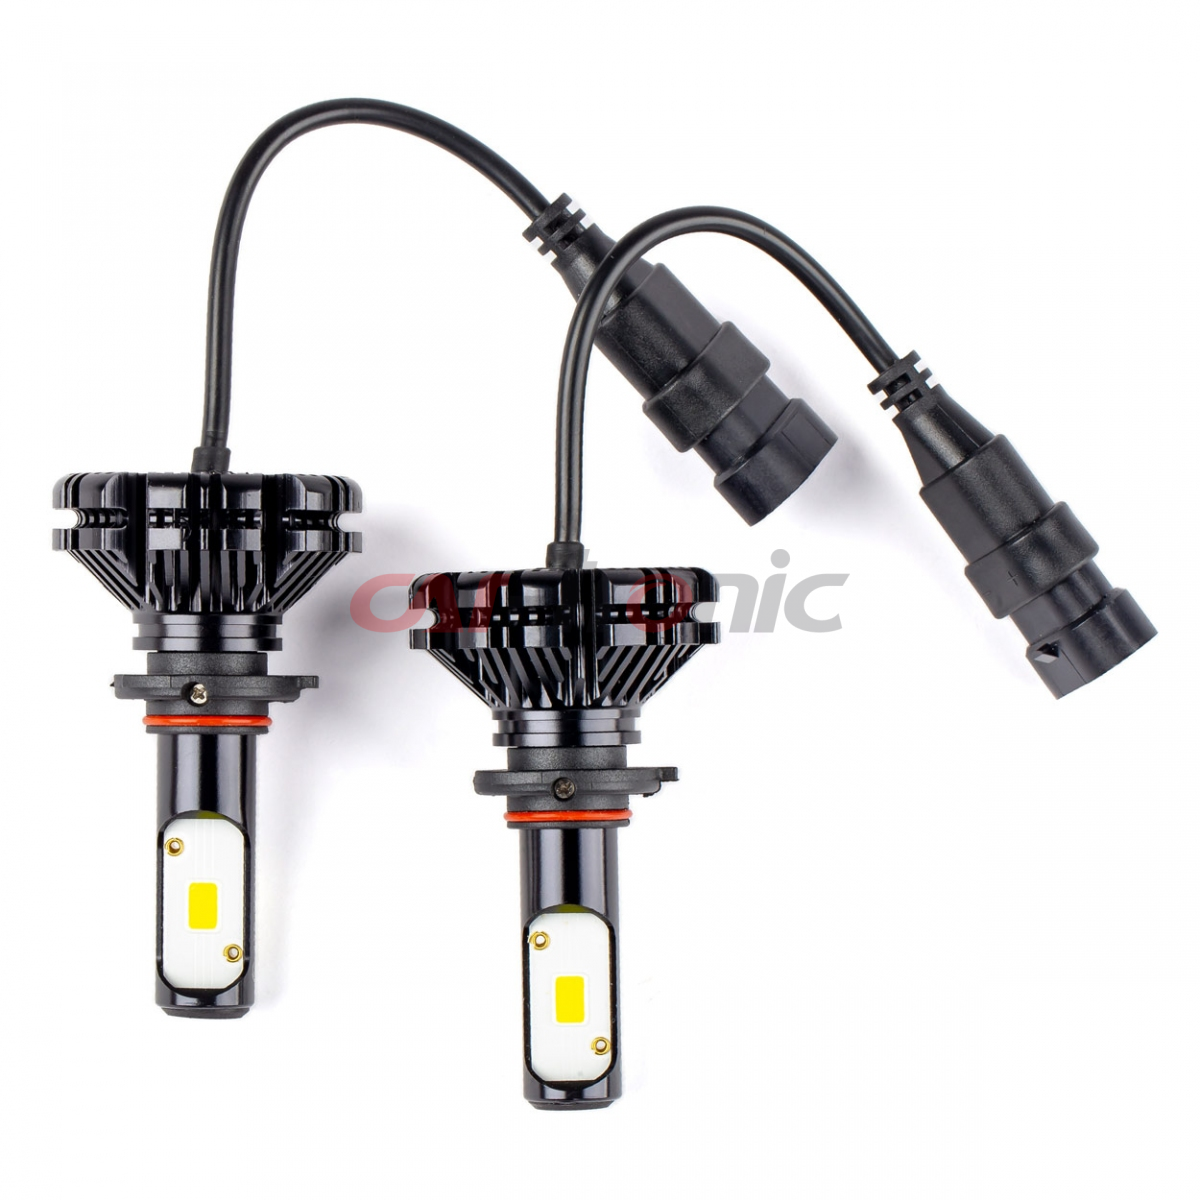 Żarówki samochodowe LED CX Series HB3 9005 AMIO-01078